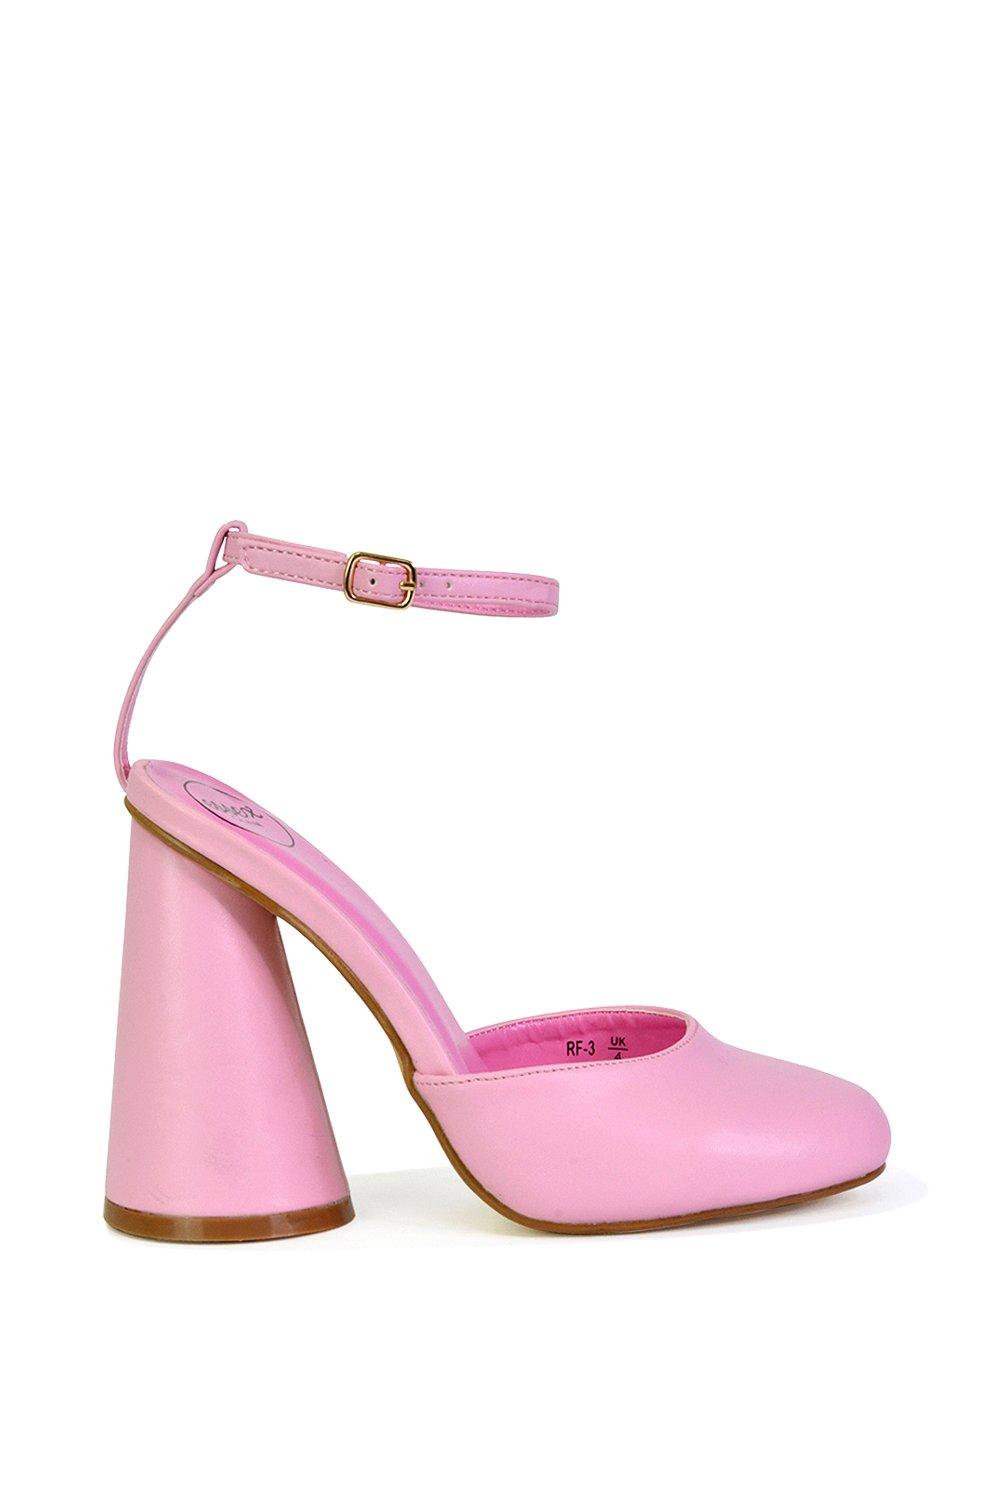 Эффектный каблук с блоком цилиндров и ремешком на щиколотке Ekin XY London, розовый туфли женские кожаные на толстом каблуке с бисером на квадратном каблуке